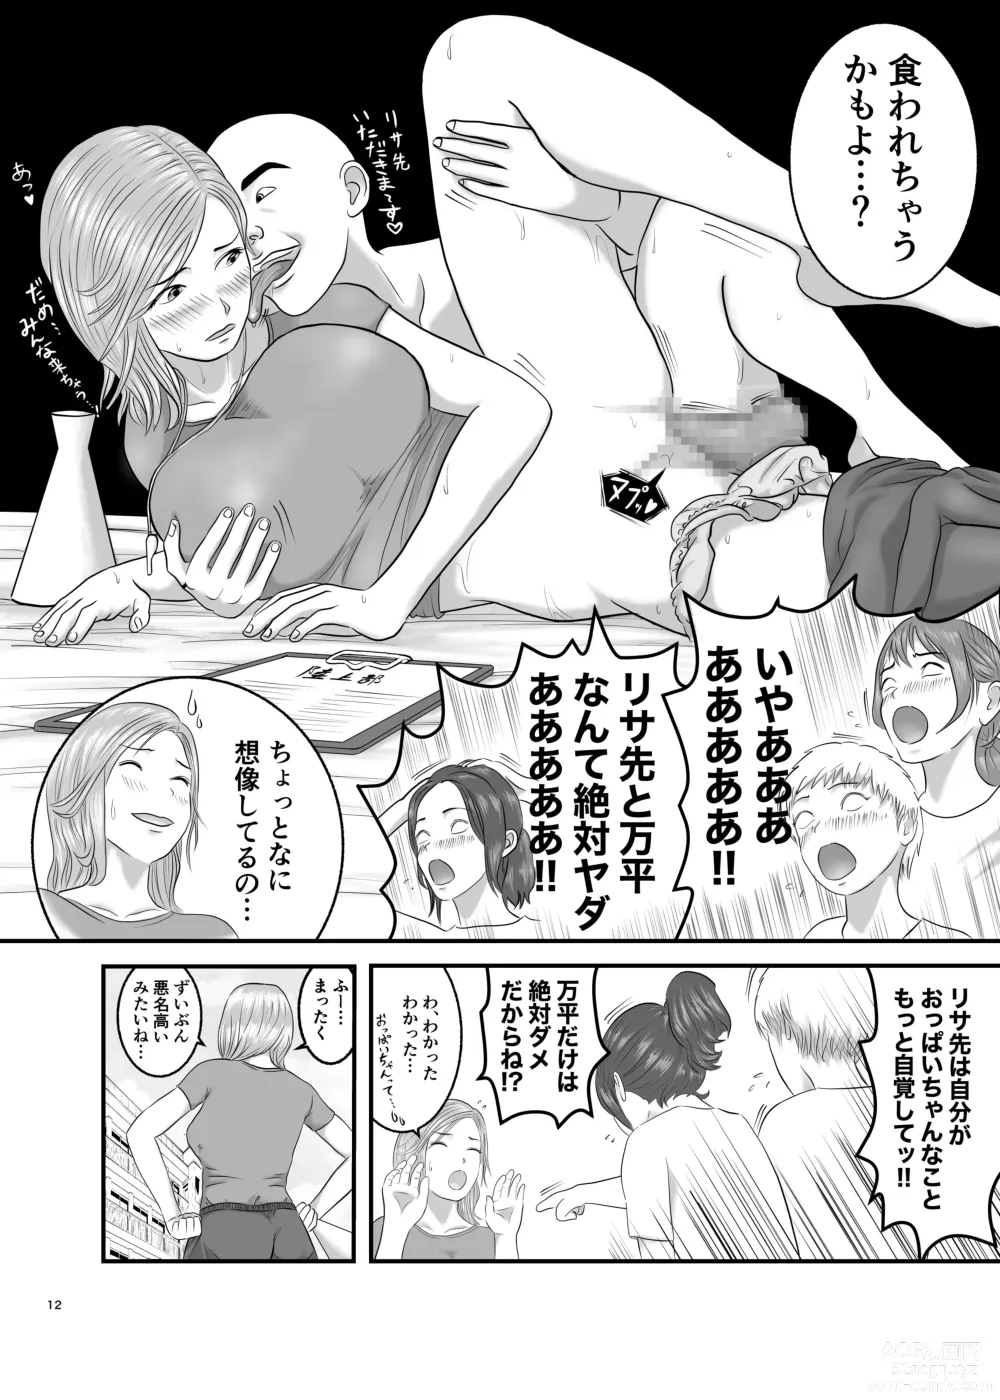 Page 12 of doujinshi Akogare no Hito wa Mou Owari!